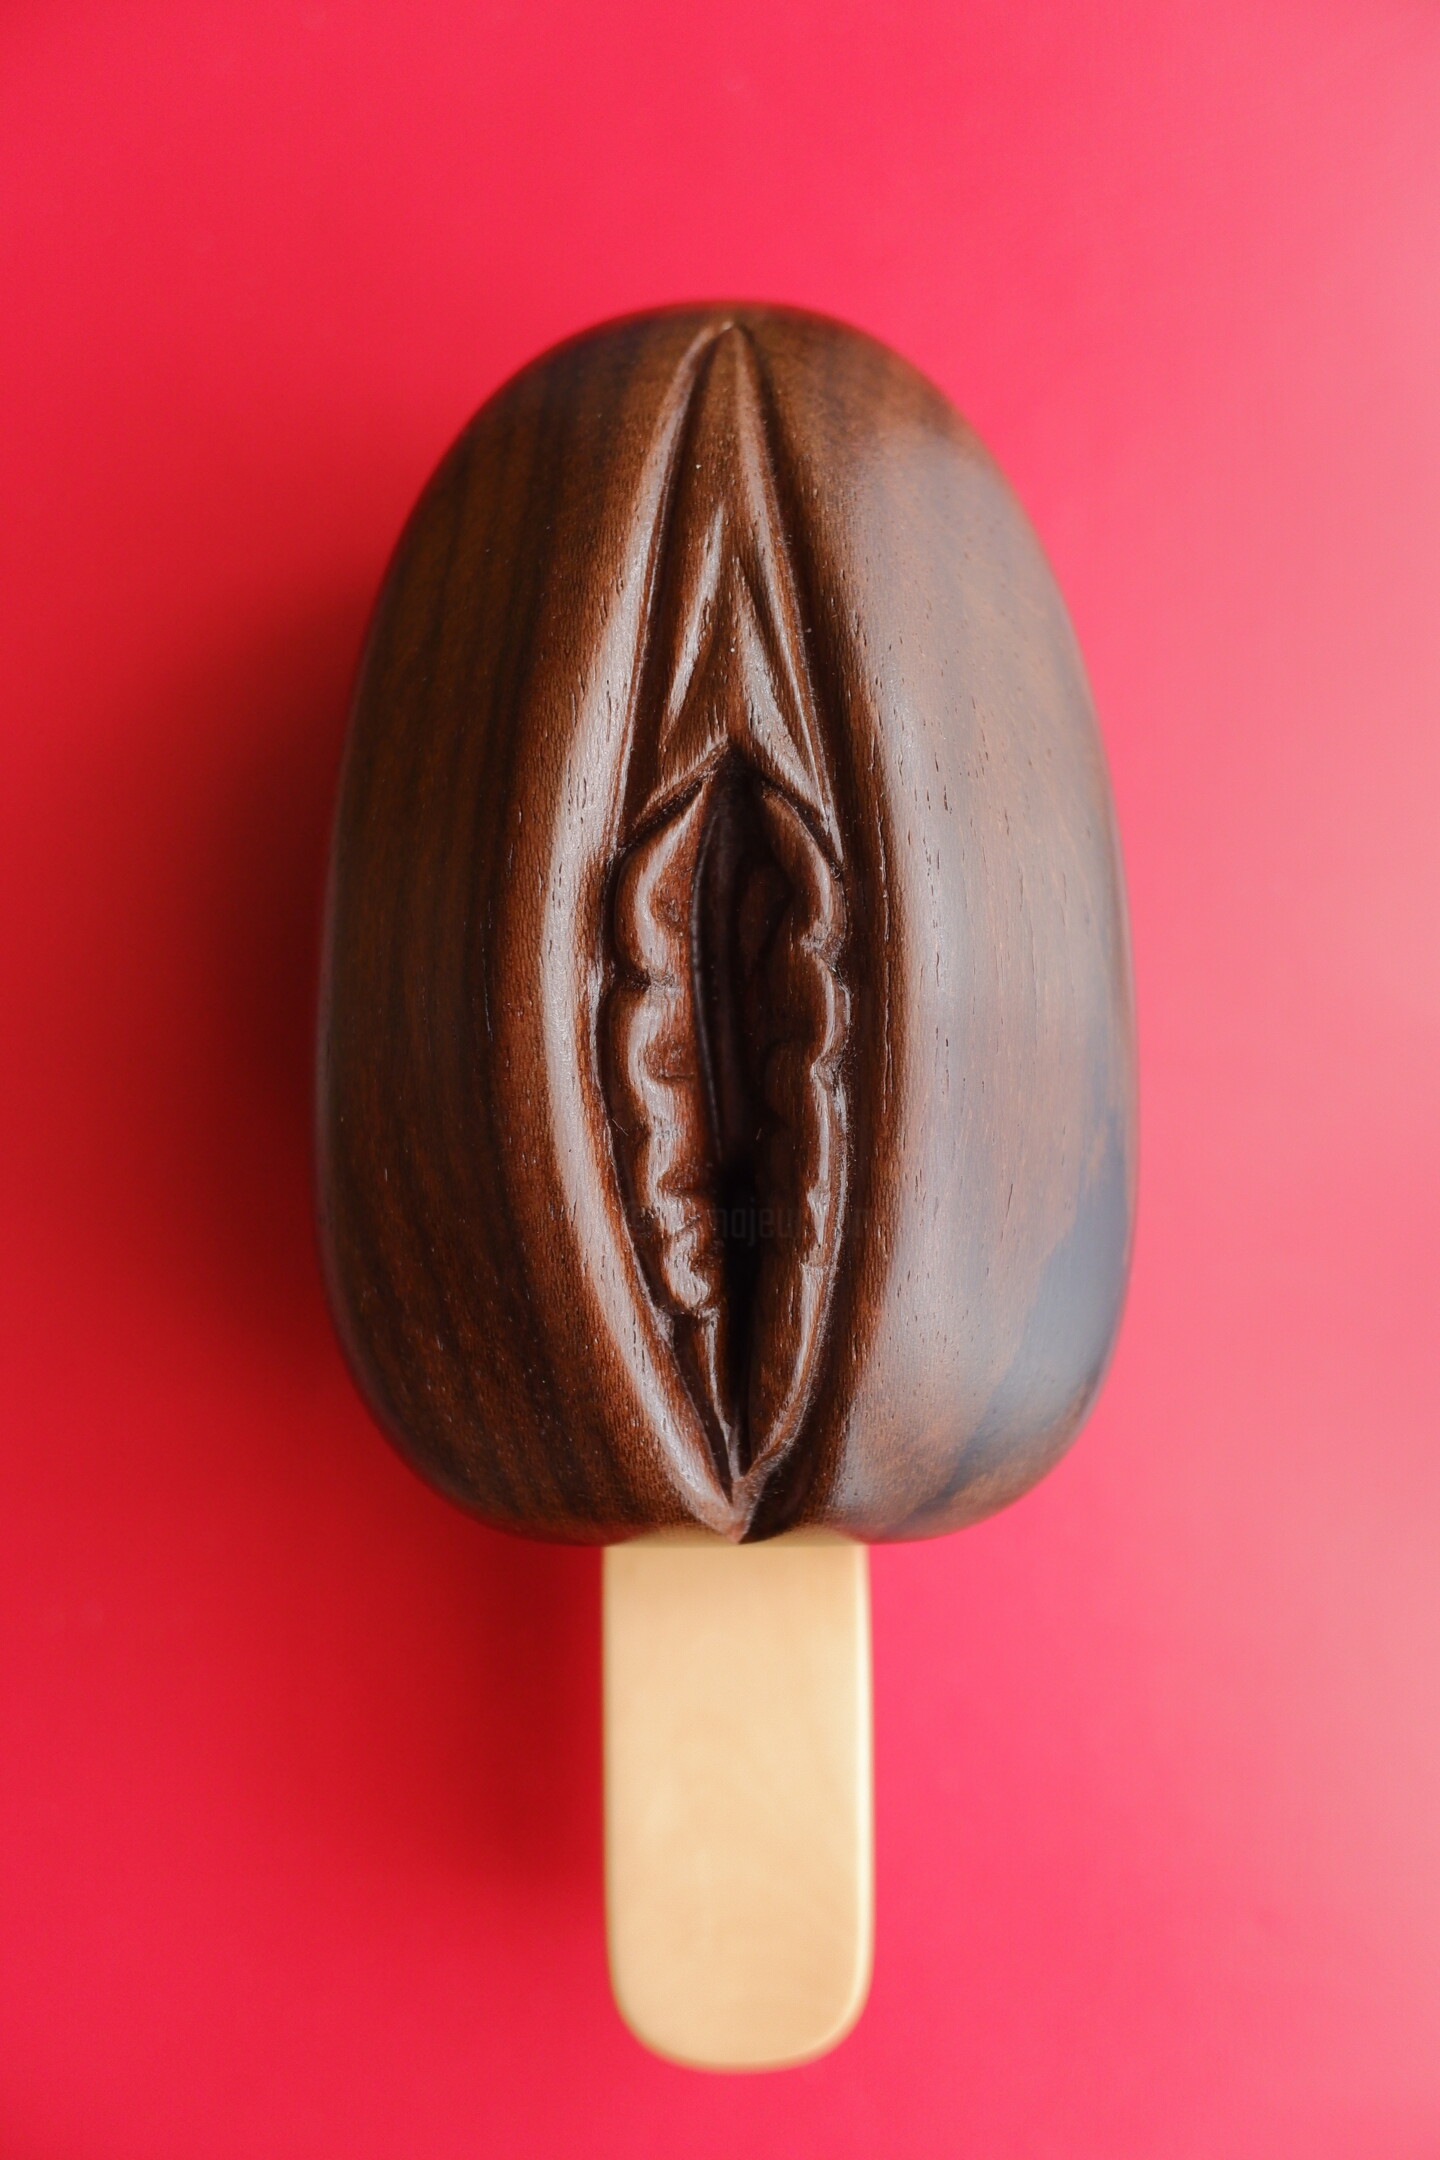 Glace Chocolat/Zézette, Sculpture by Anthony Gratien | Artmajeur